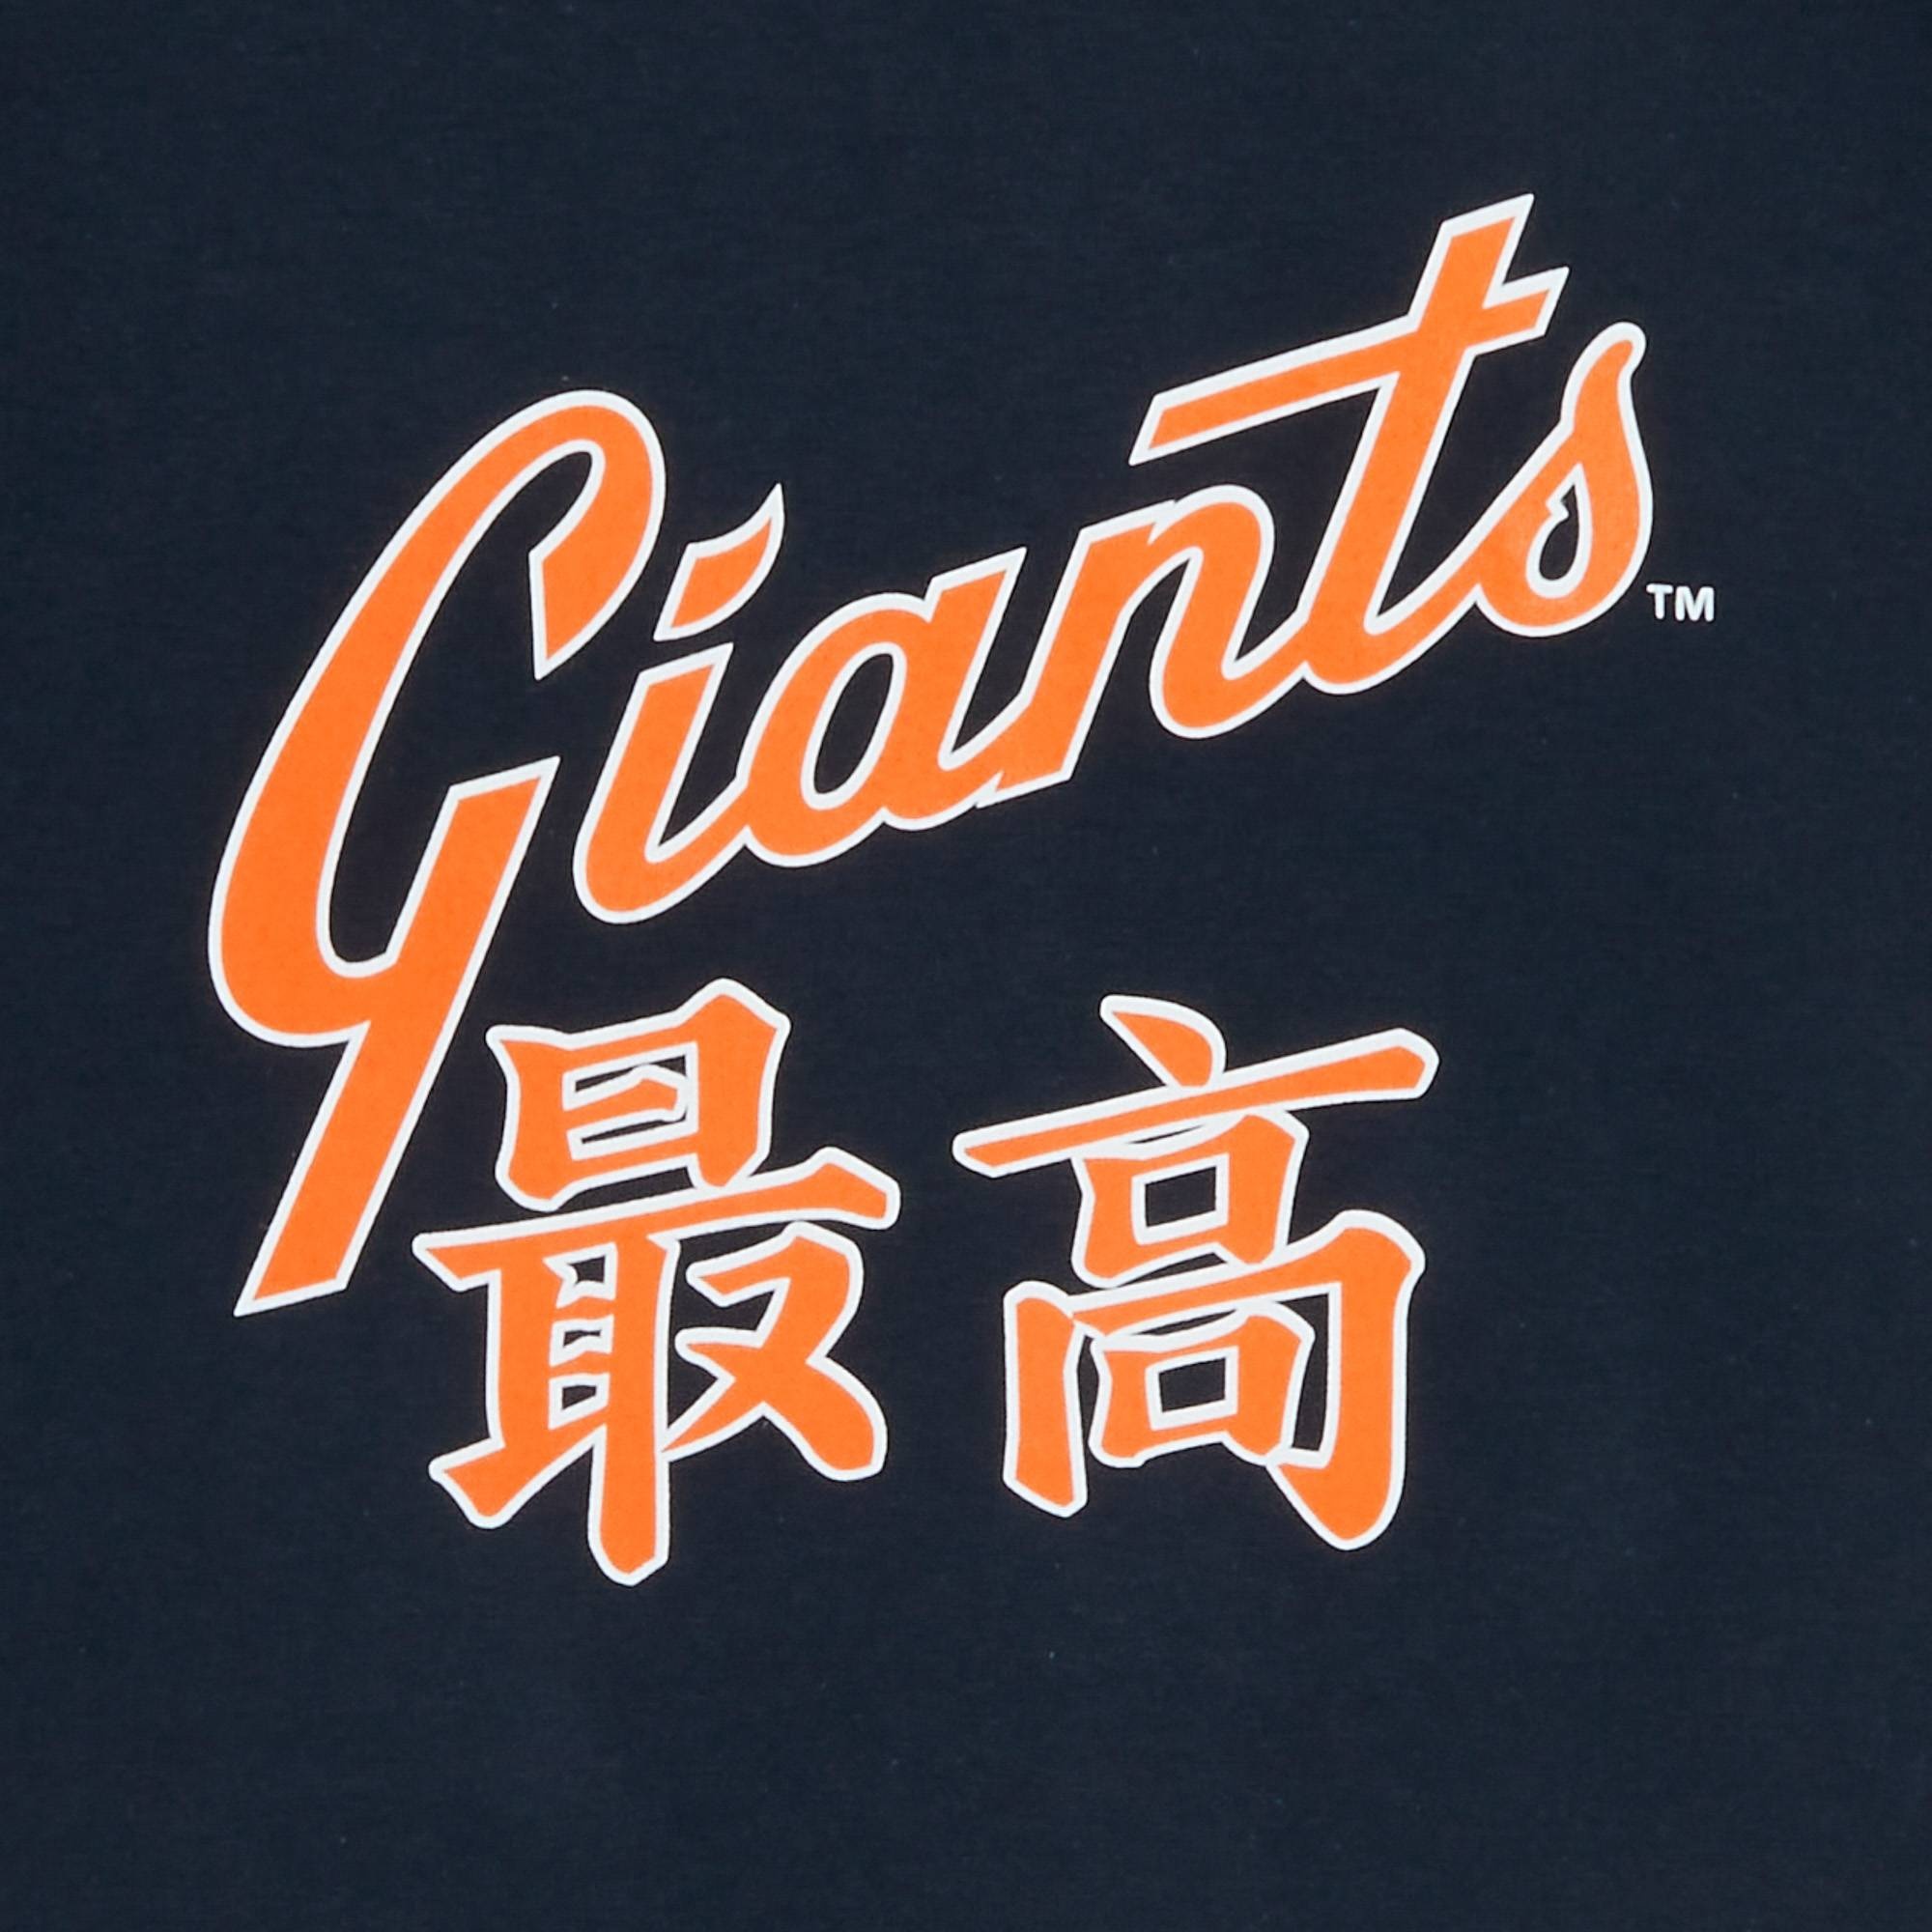 Supreme Supreme x MLB Kanji Teams Tee - Giants 'Navy